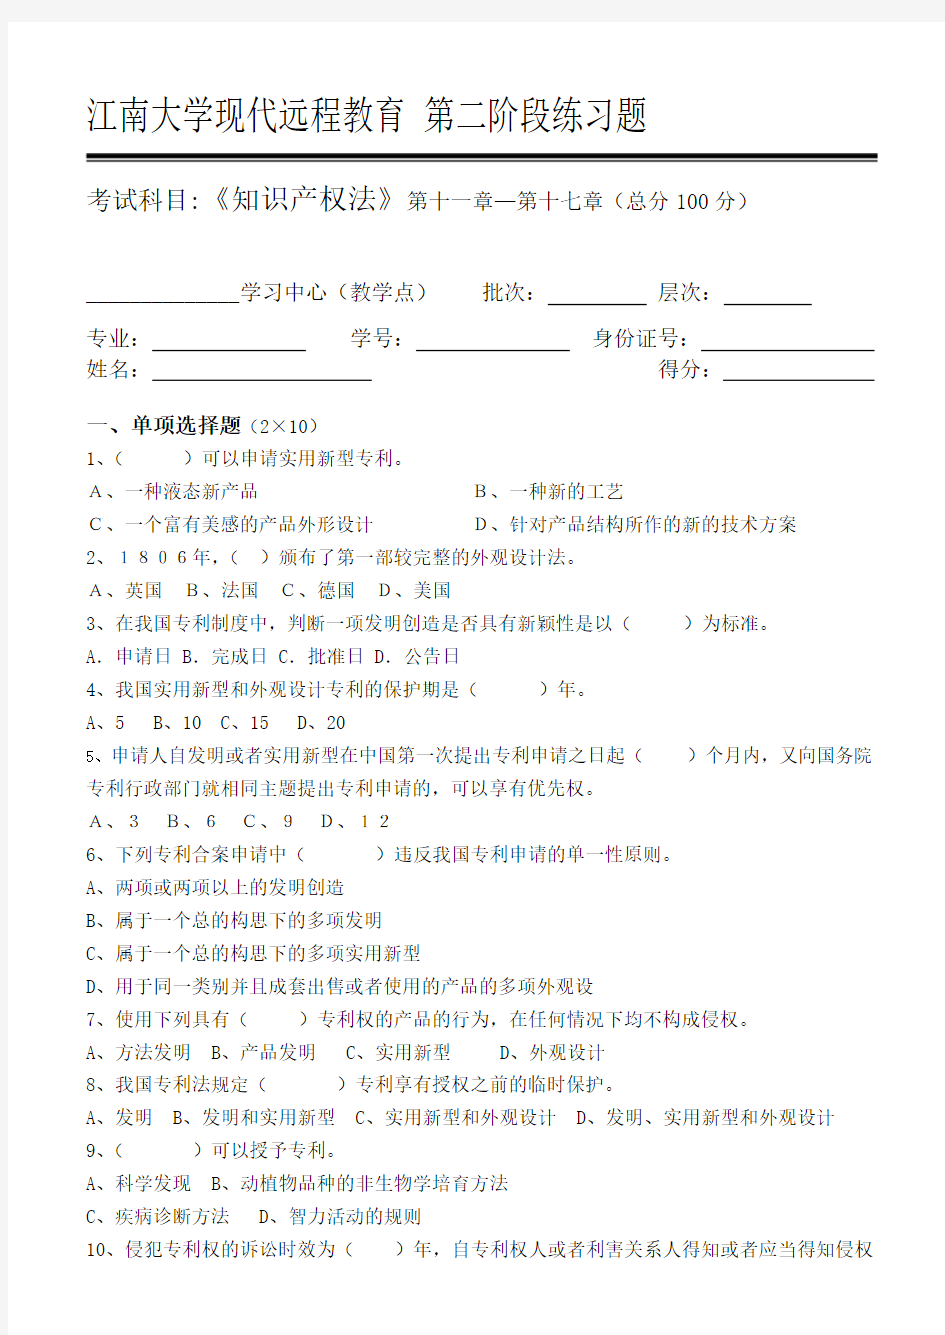 知识产权法第2阶段练习题 江南大学考试题库答案,答案在最后一页